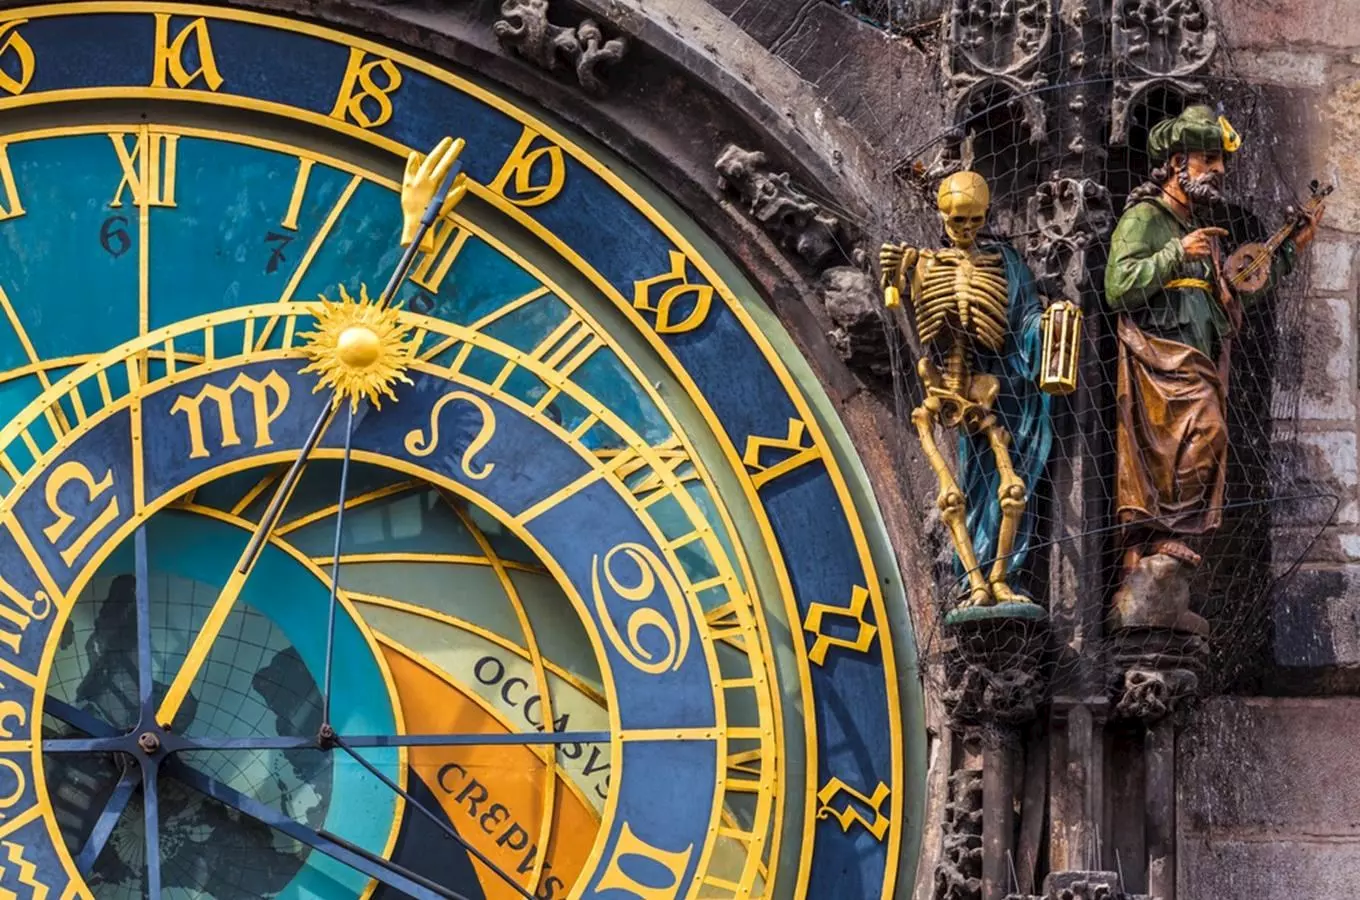 Pražský orloj aneb prohlédněte si apoštoly zblízka!